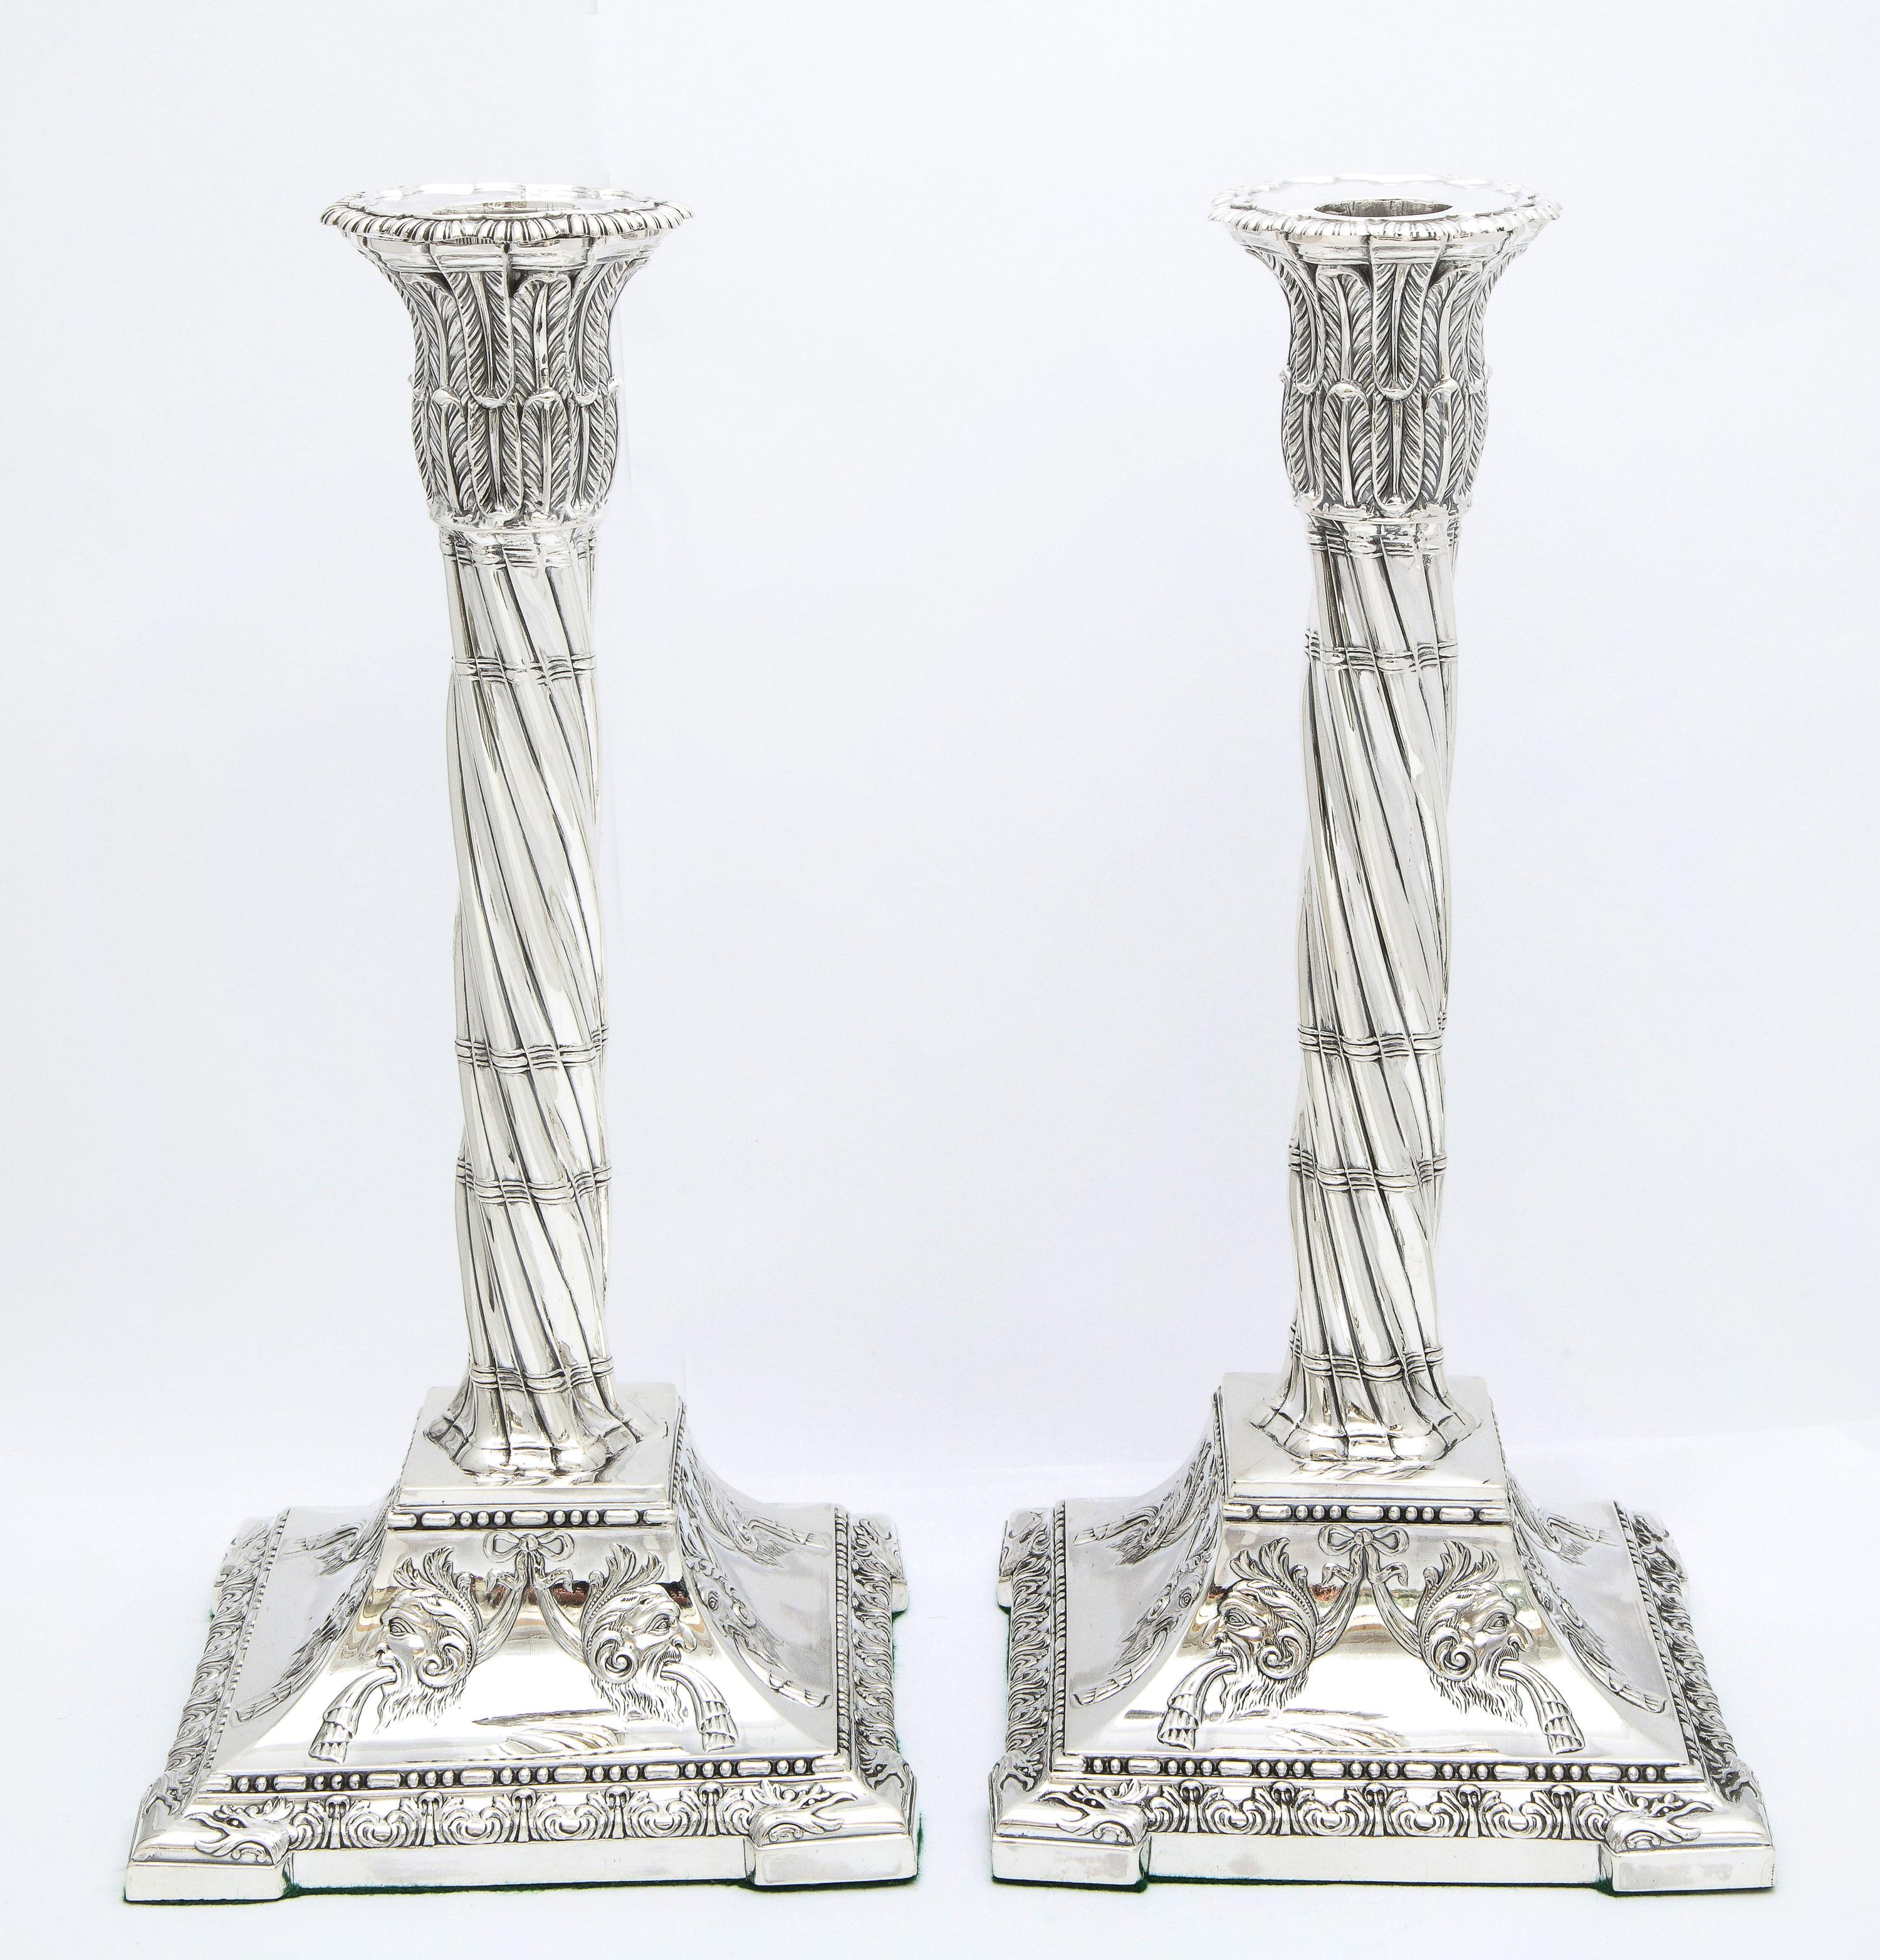 Großes Paar klassizistischer (viktorianischer) Kerzenständer aus Sterlingsilber in Säulenform, Sheffield, England, Jahresstempel 1898, Henry Wigful - Hersteller. Jeder Kerzenständer misst 11 1/6 Zoll hoch x 5 1/4 Zoll tief x 5 1/4 Zoll breit. Die